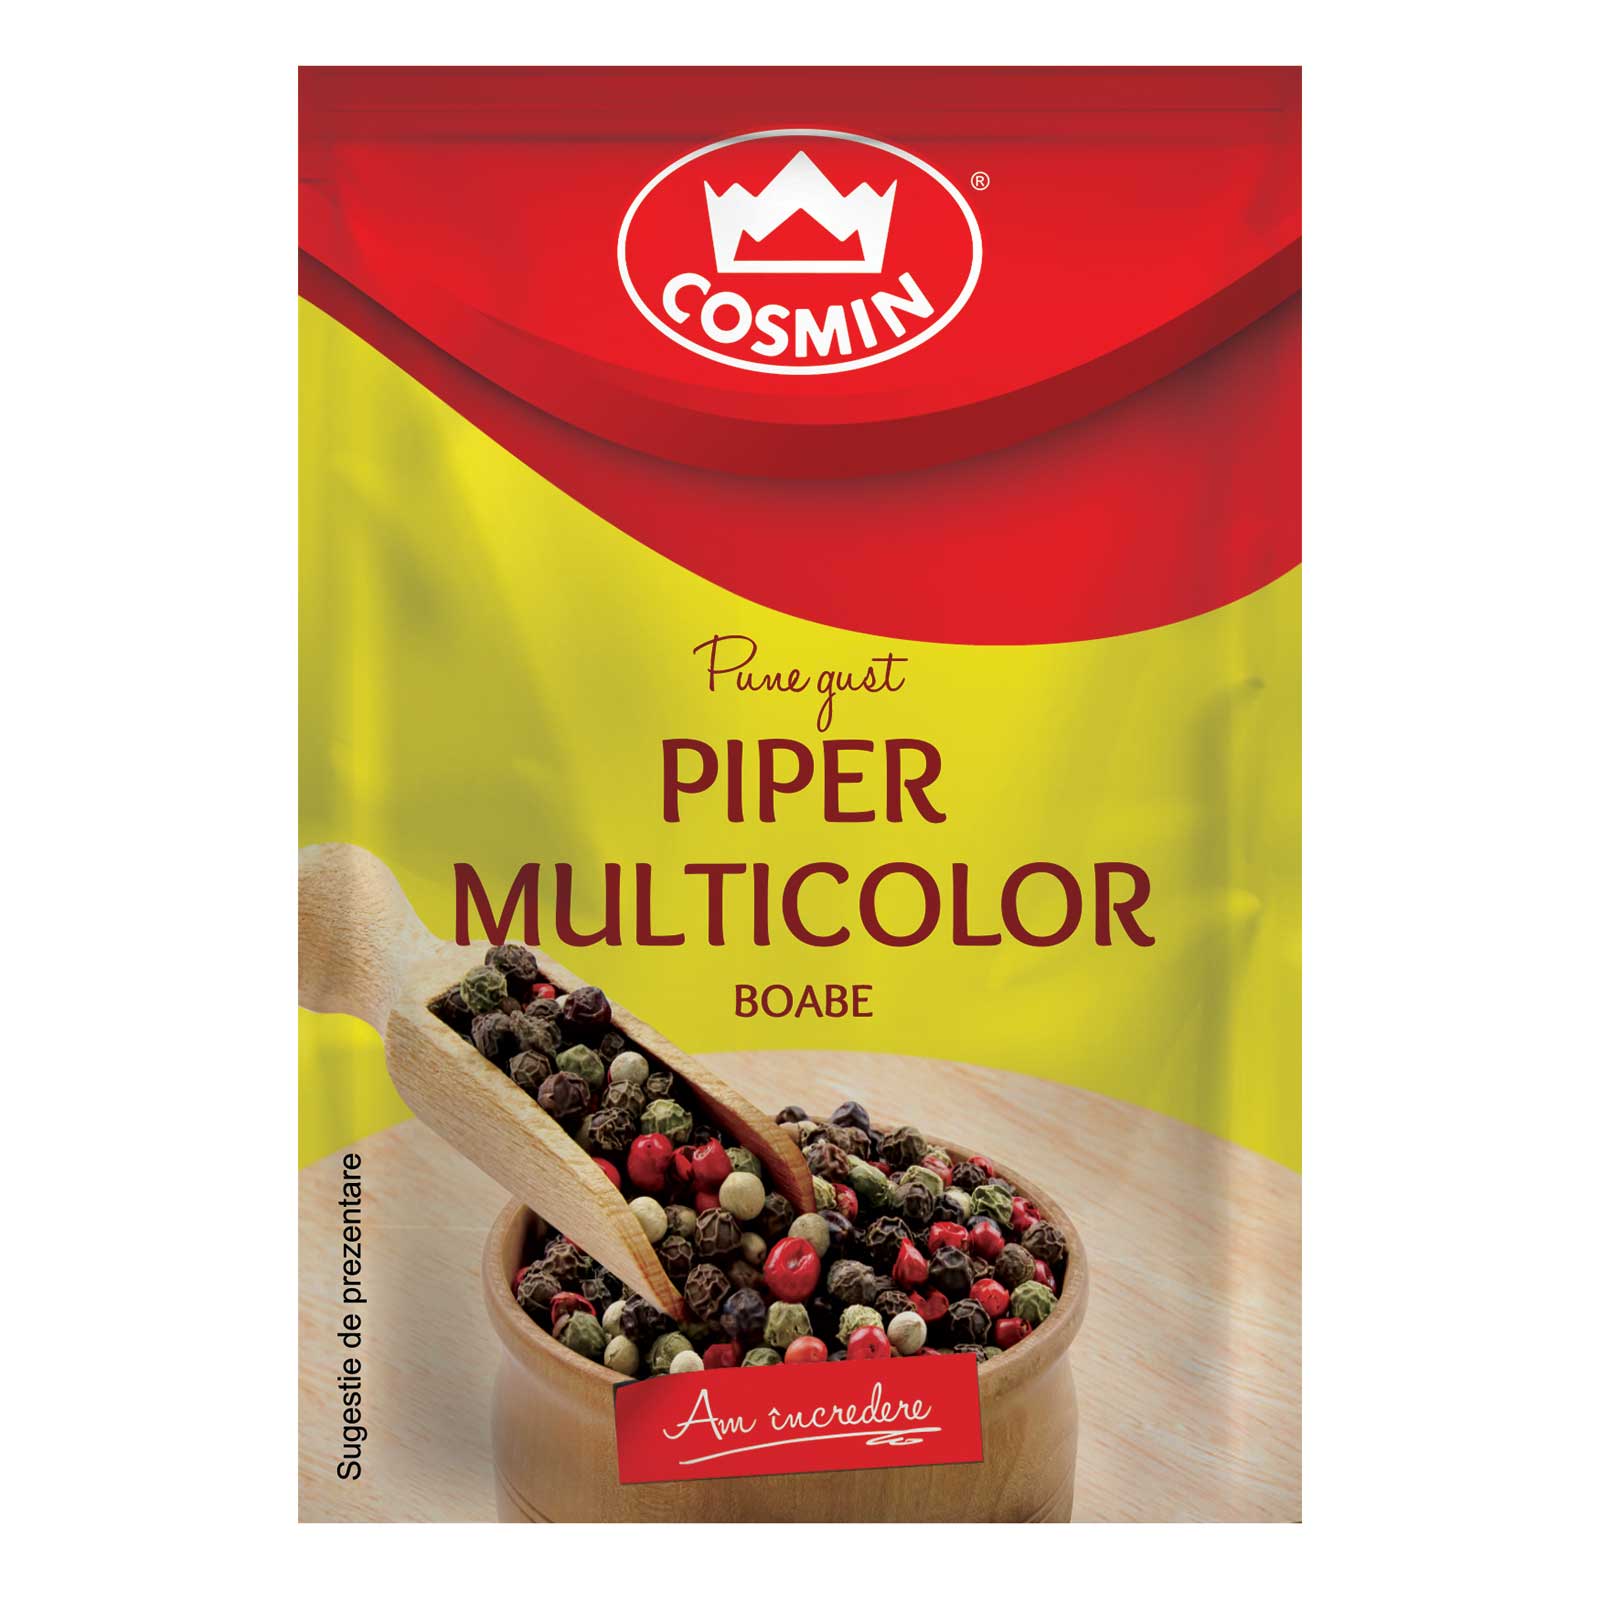 Piper multicolor boabe, Cosmin, 17g